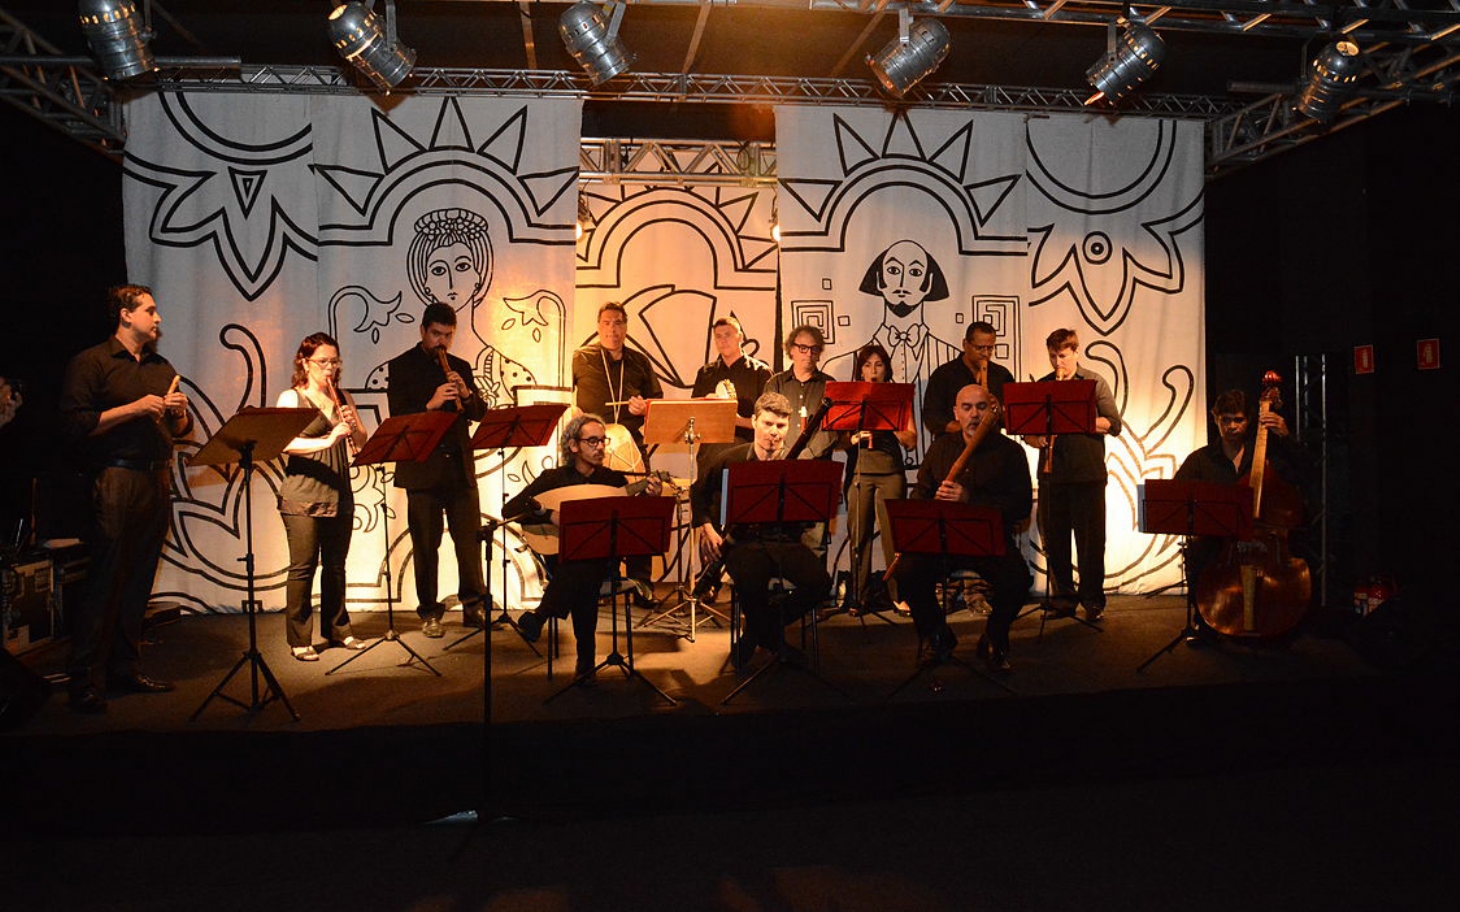 Concerto de Natal reúne Sinfônica de Cubatão e Grupo Rinascita | Jornal da Orla